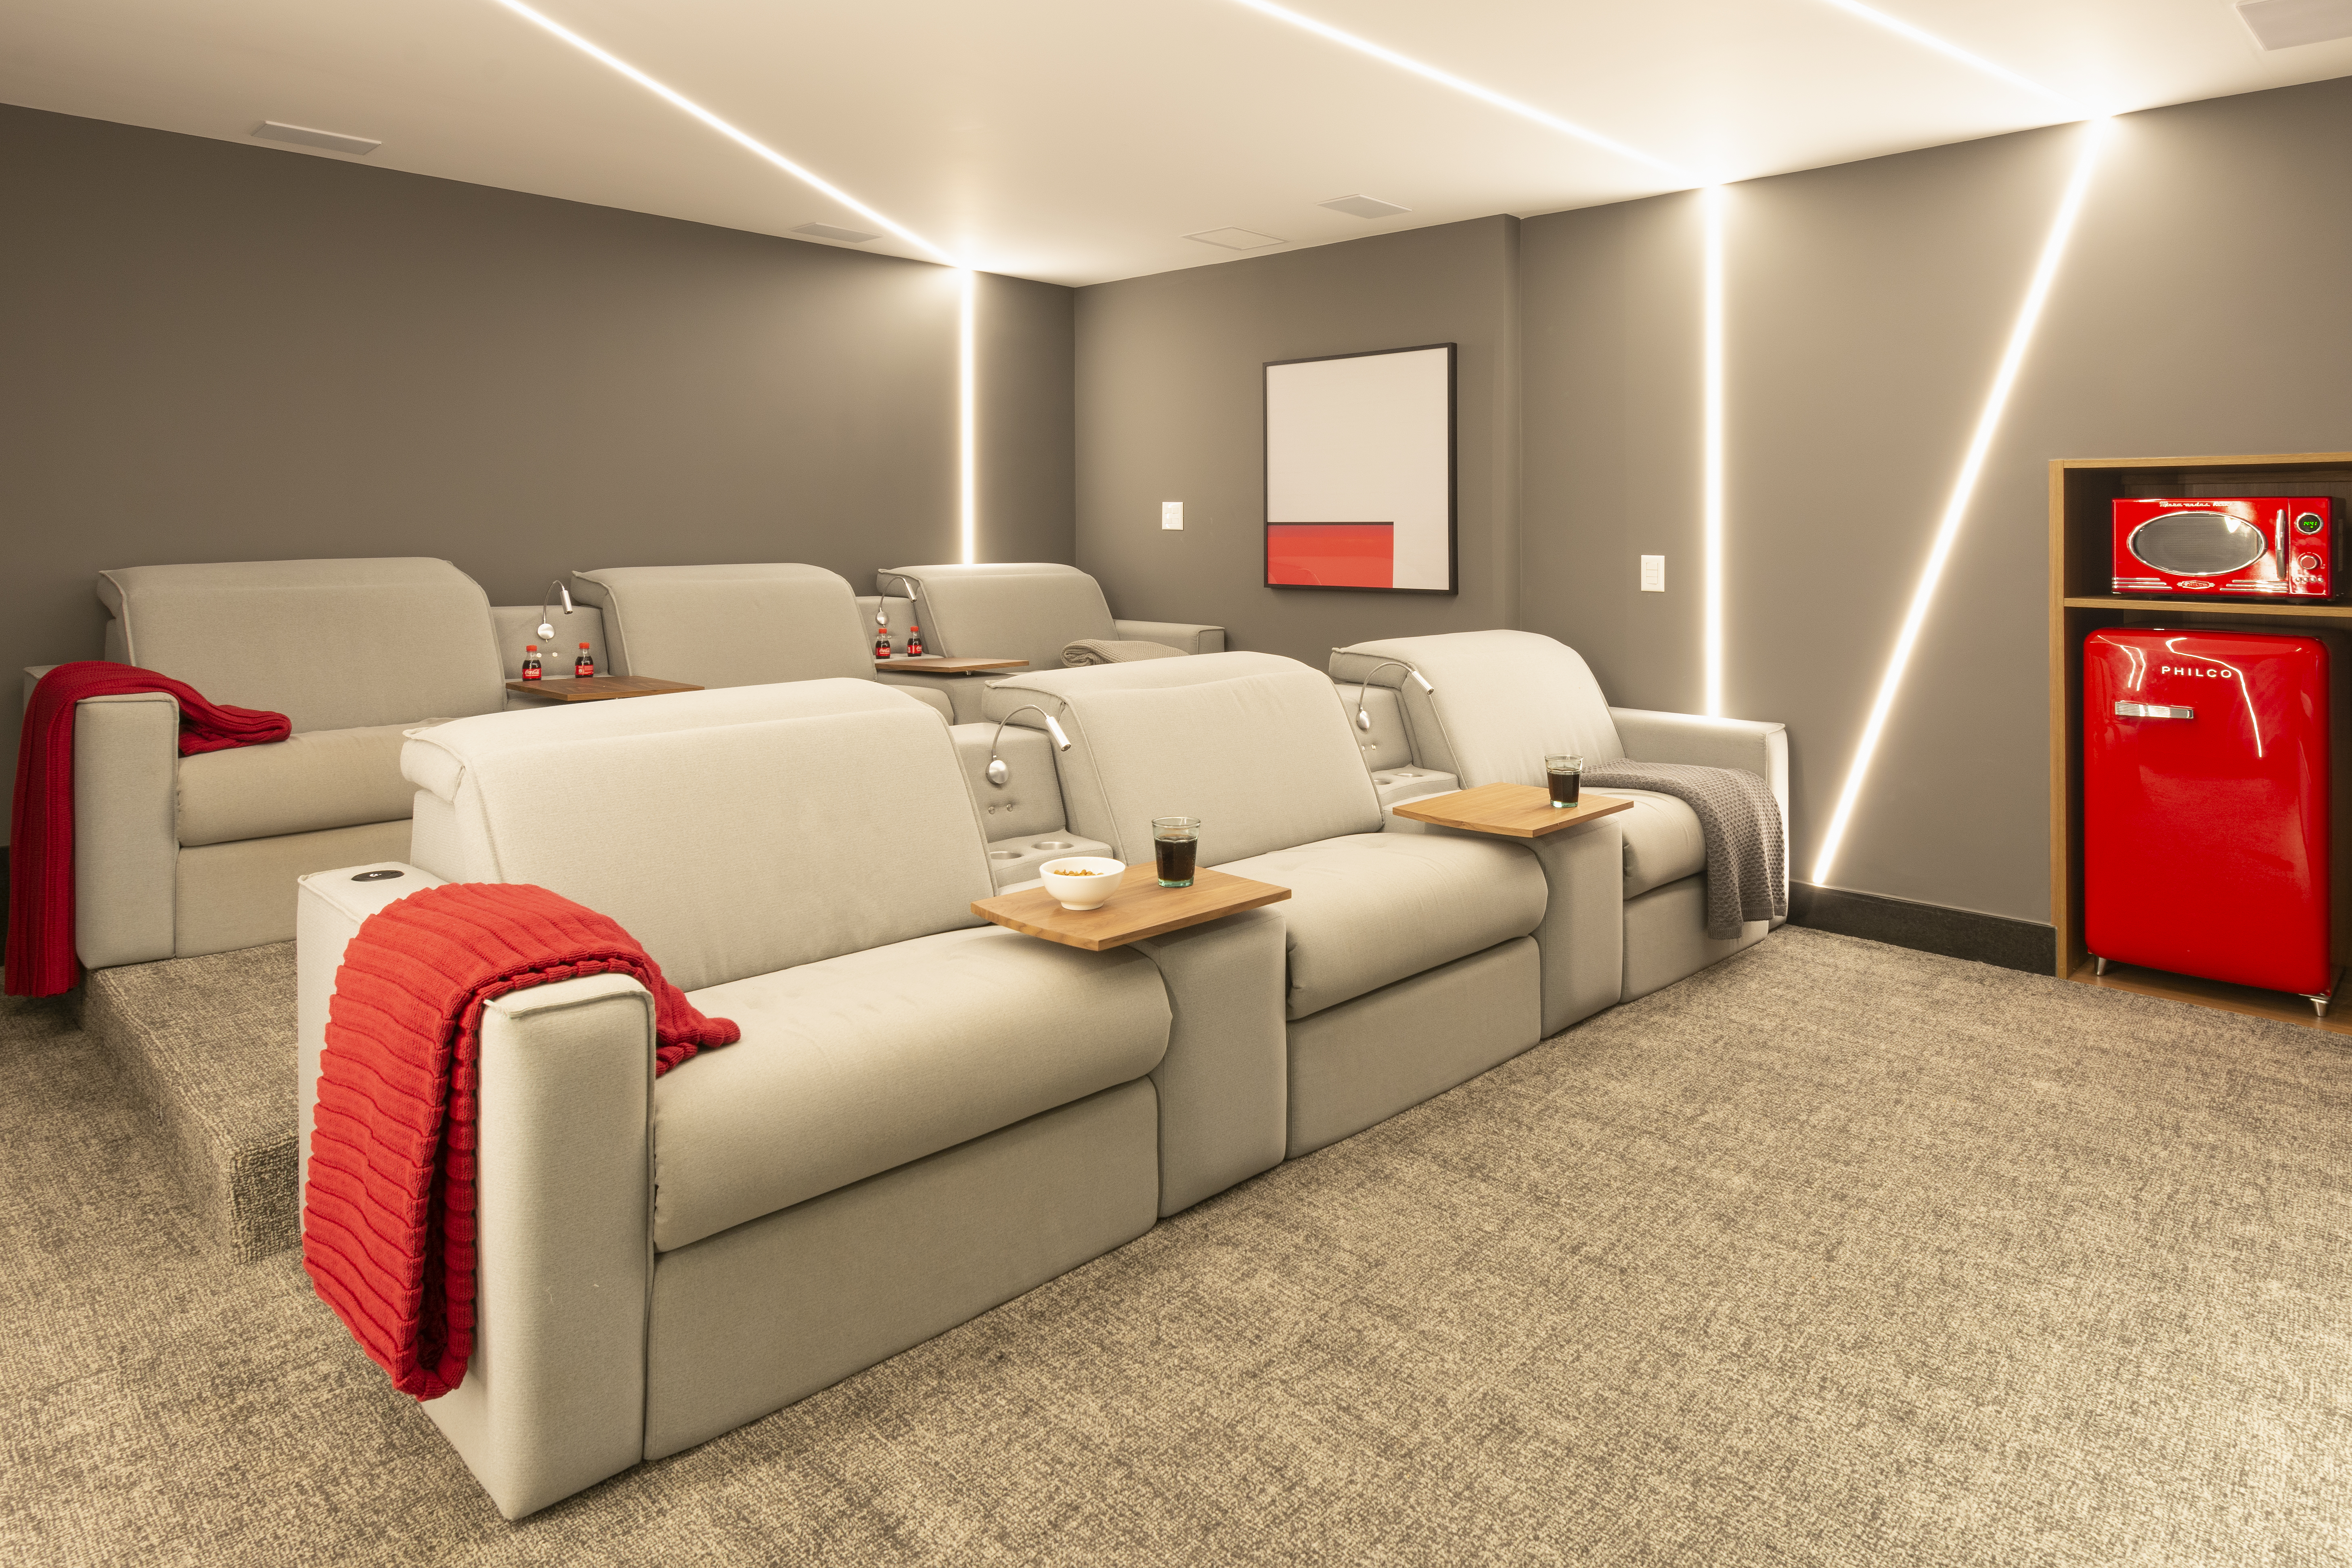 Sala de cinema com pipoqueira e poltronas é destaque em casa de 400m²